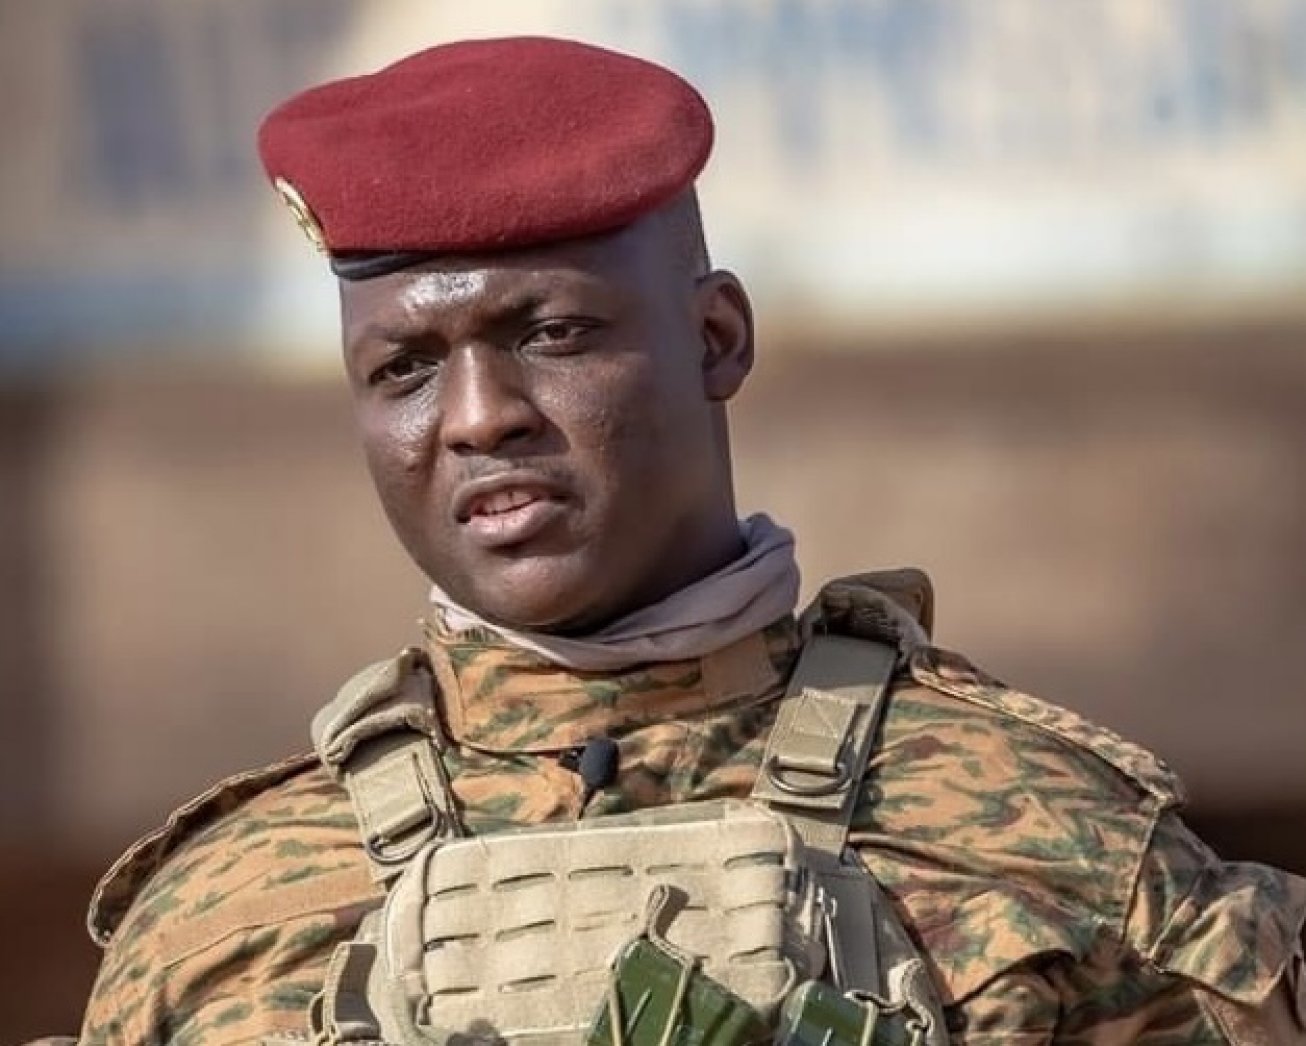 Le Burkina demande à l’armée française de quitter le pays dans un délai d’un mois